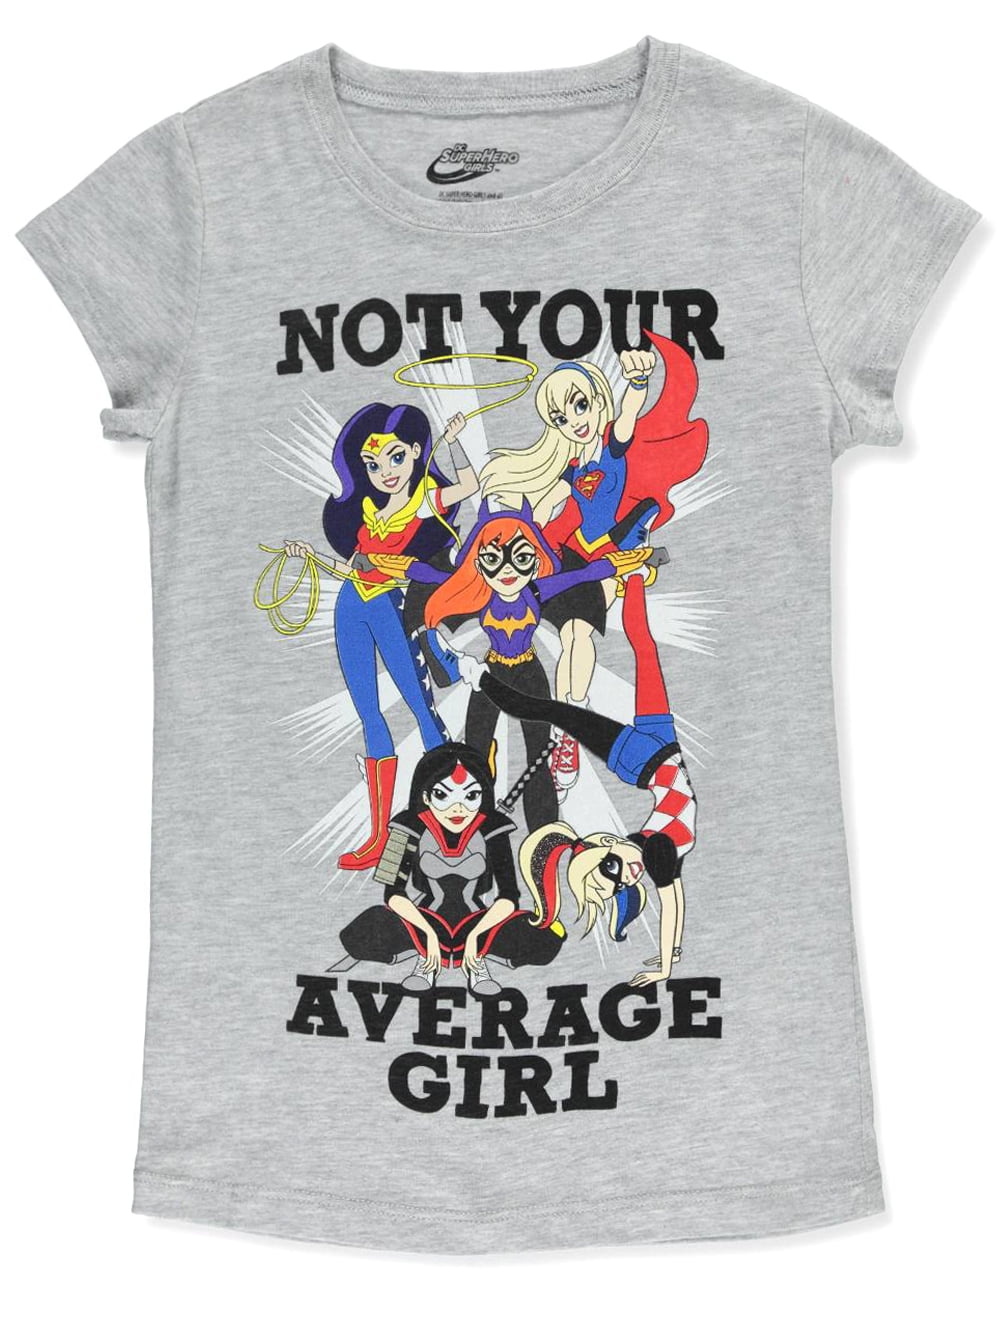 girls superhero t shirt